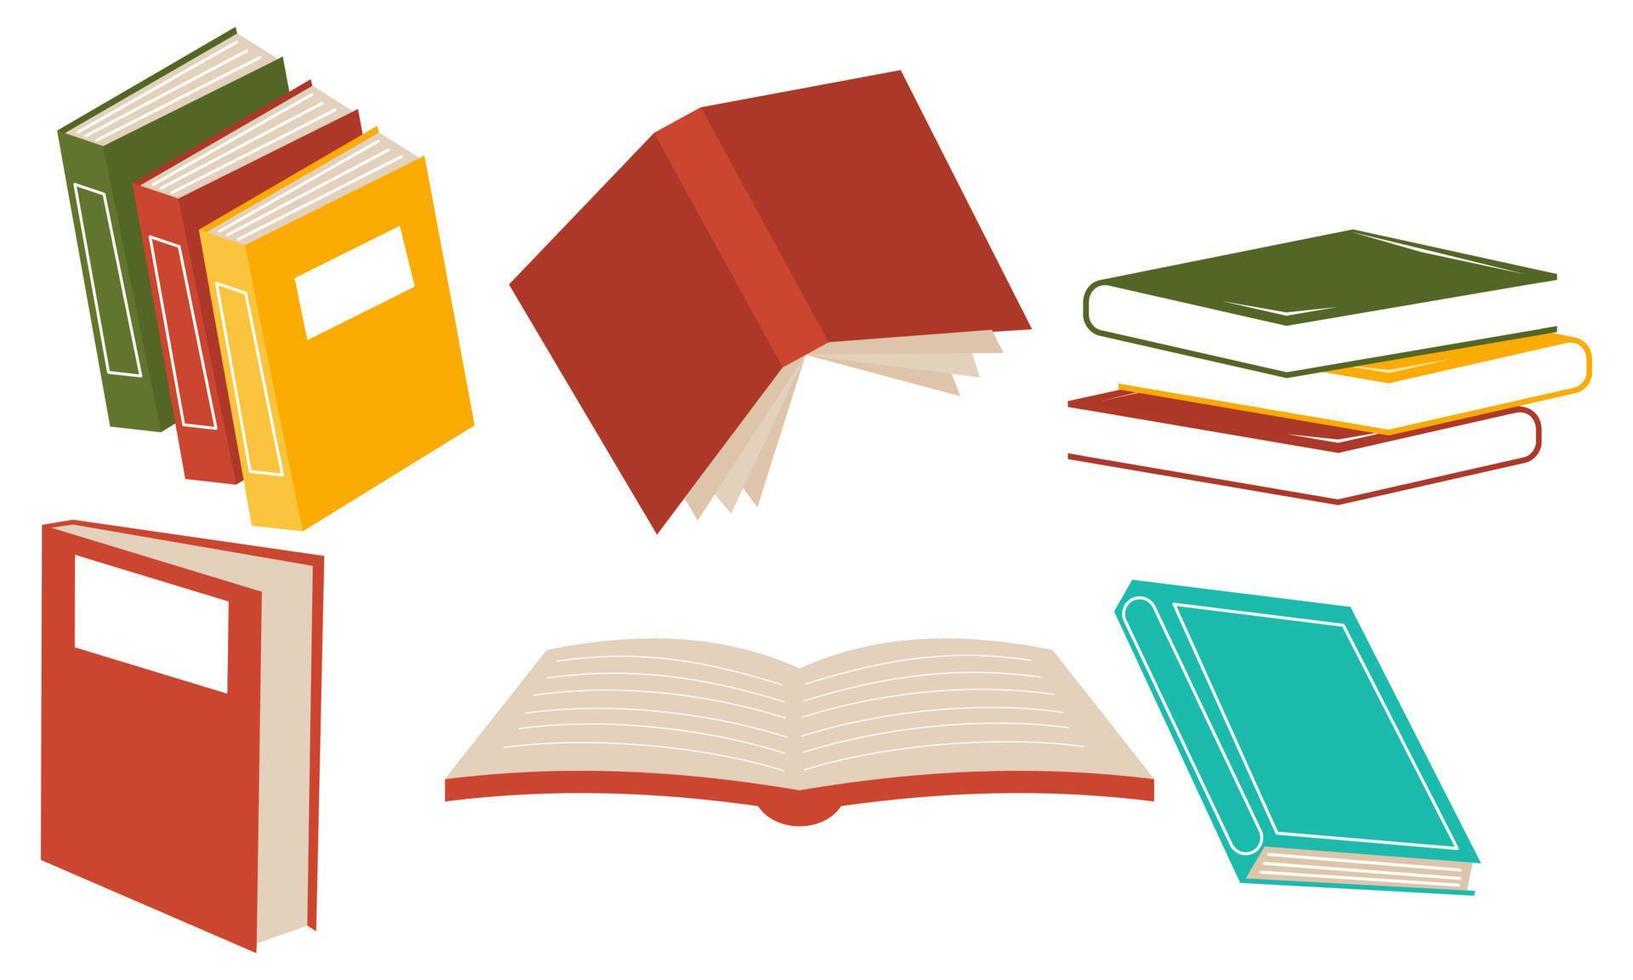 conjunto de livros para leitura, literatura, dicionários, enciclopédias, planejadores com marcadores. vetor